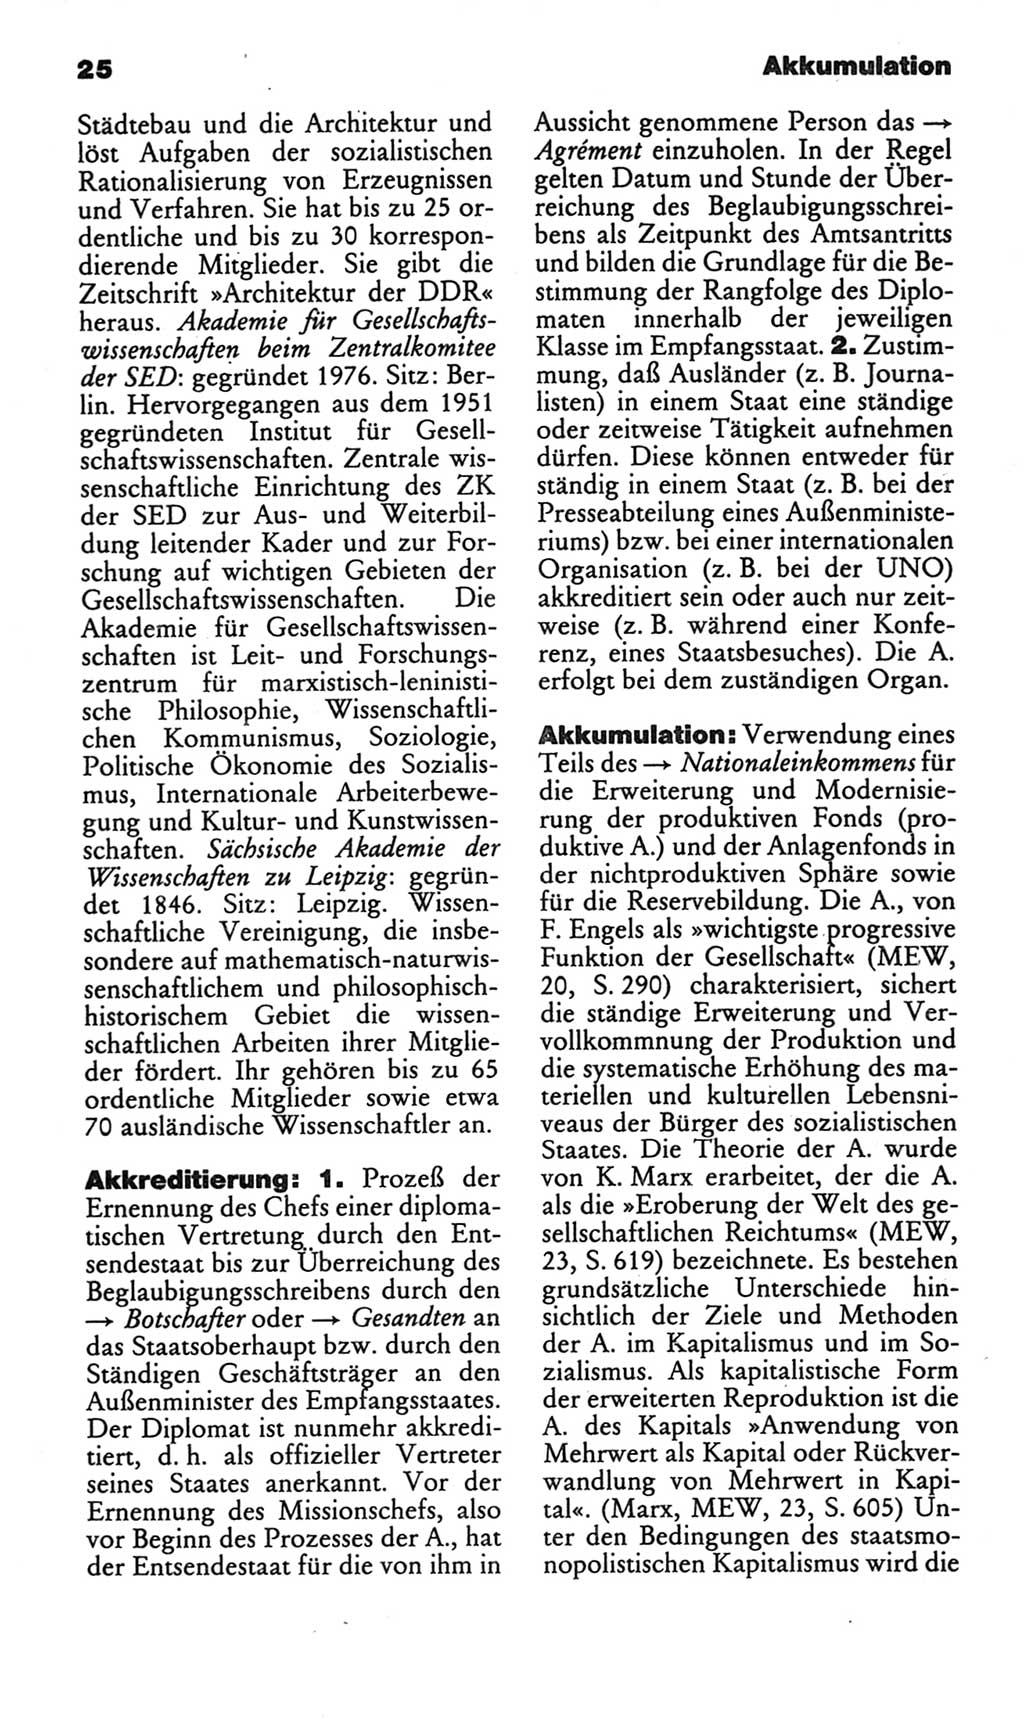 Kleines politisches Wörterbuch [Deutsche Demokratische Republik (DDR)] 1986, Seite 25 (Kl. pol. Wb. DDR 1986, S. 25)